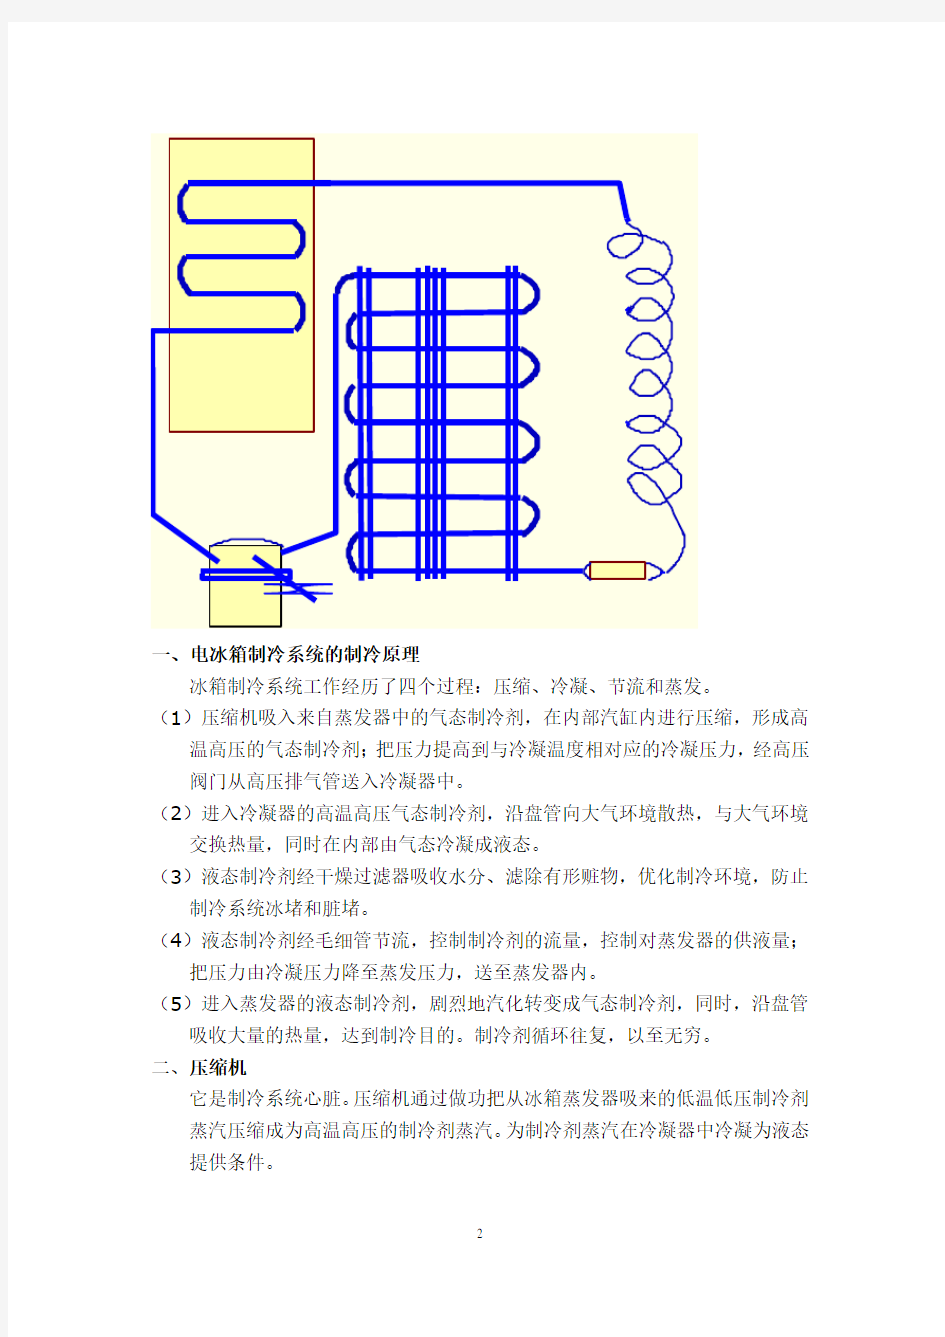 电冰箱制冷系统的组成、作用及种类